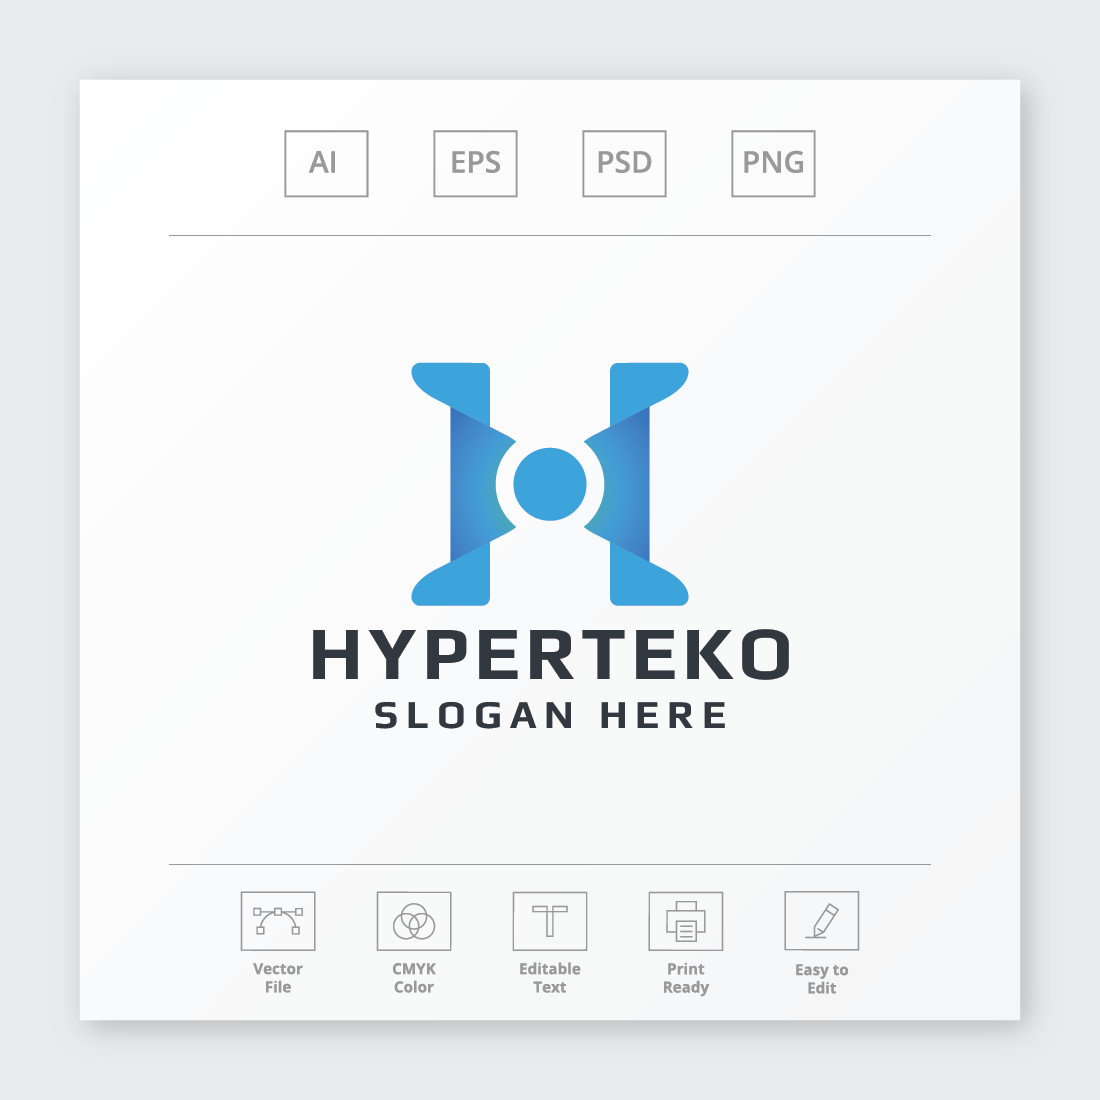 Hyperteko Letter H Logo preview image.